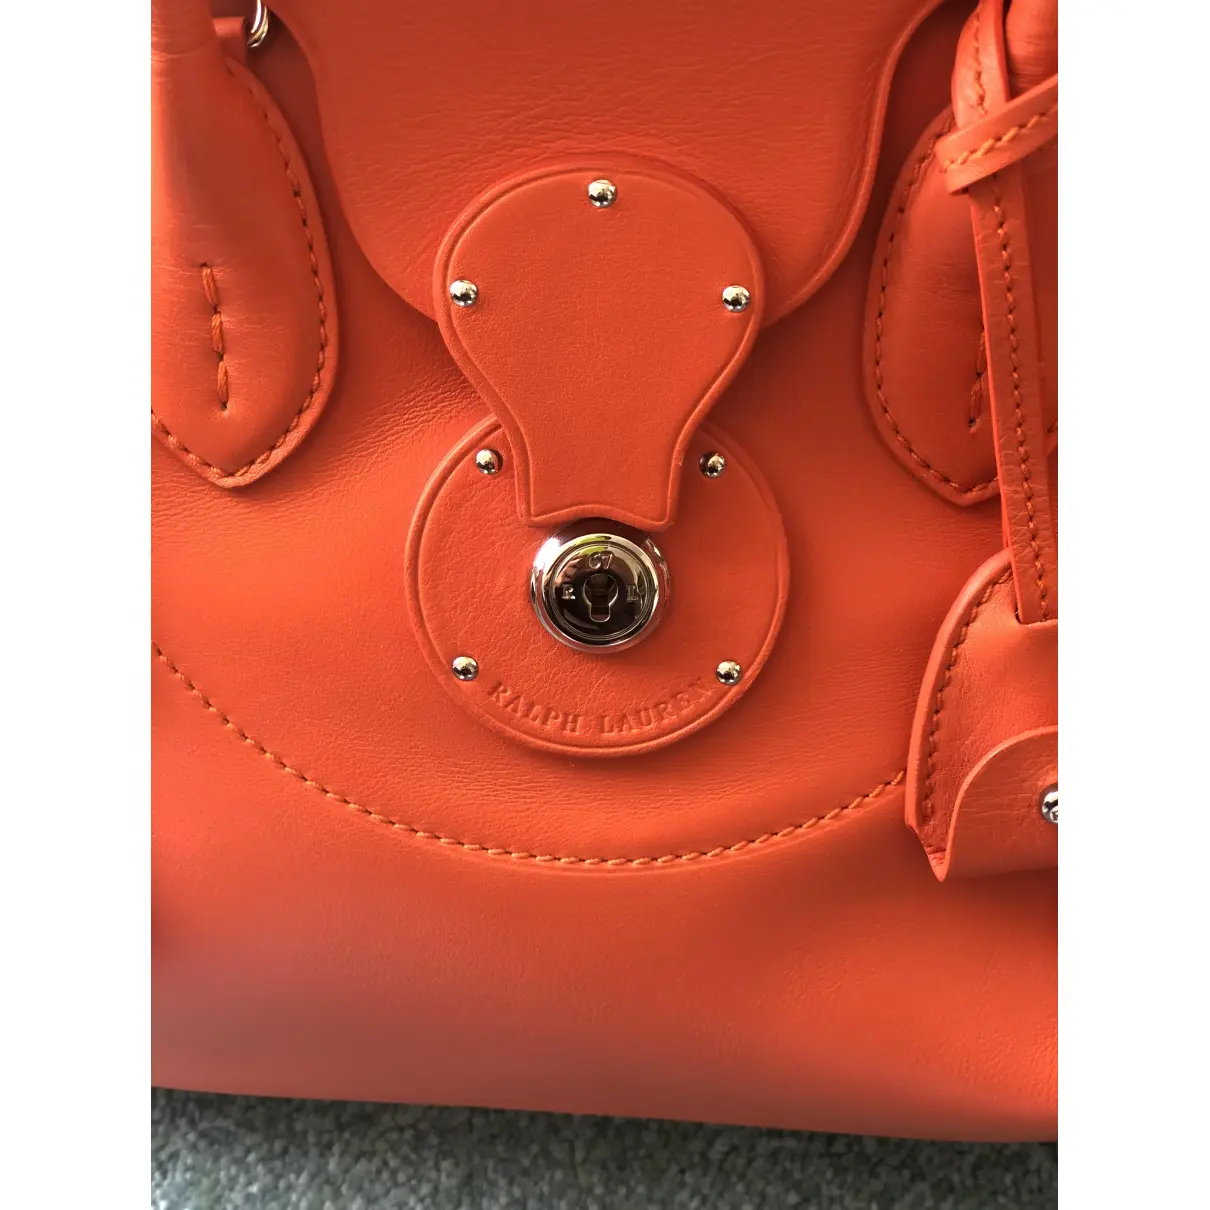 Buy Ralph Lauren Leather handbag online